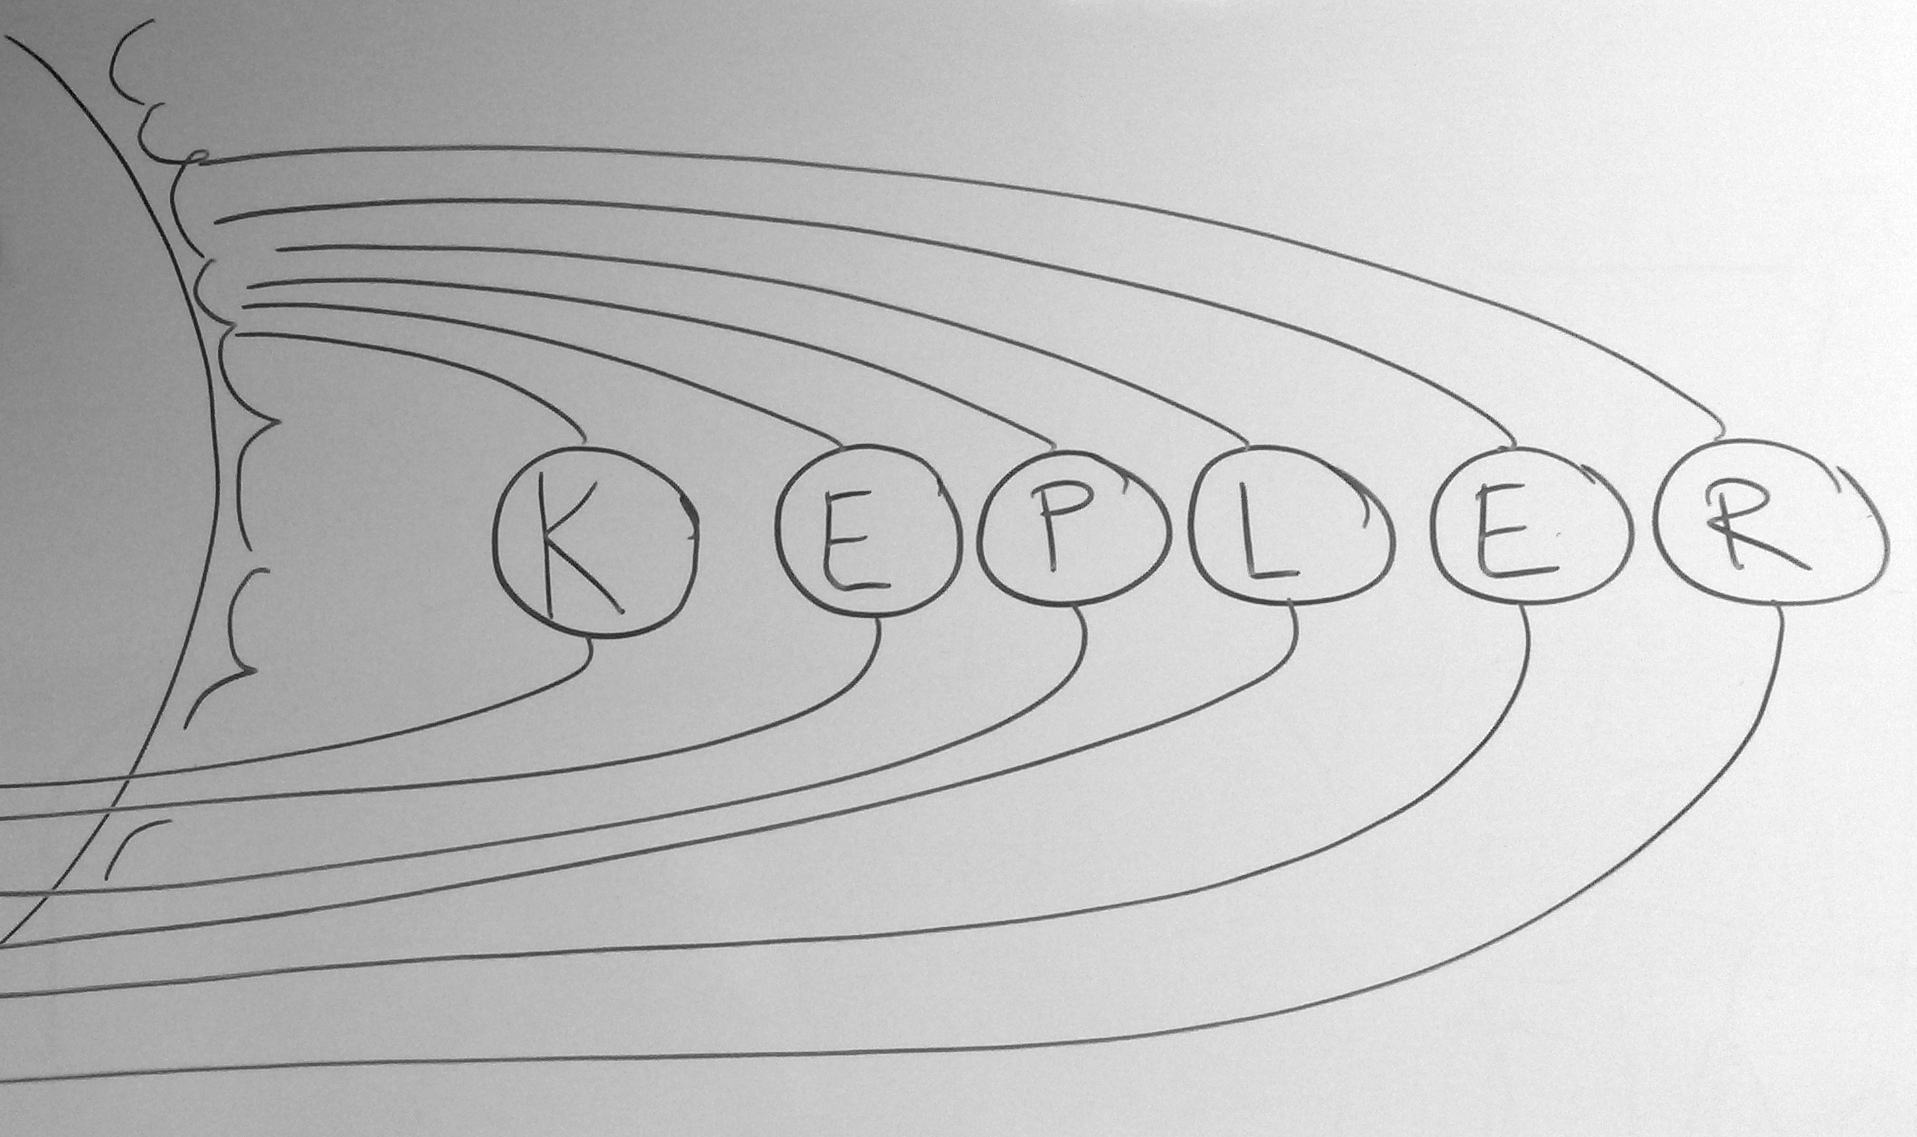 Kepler-logo